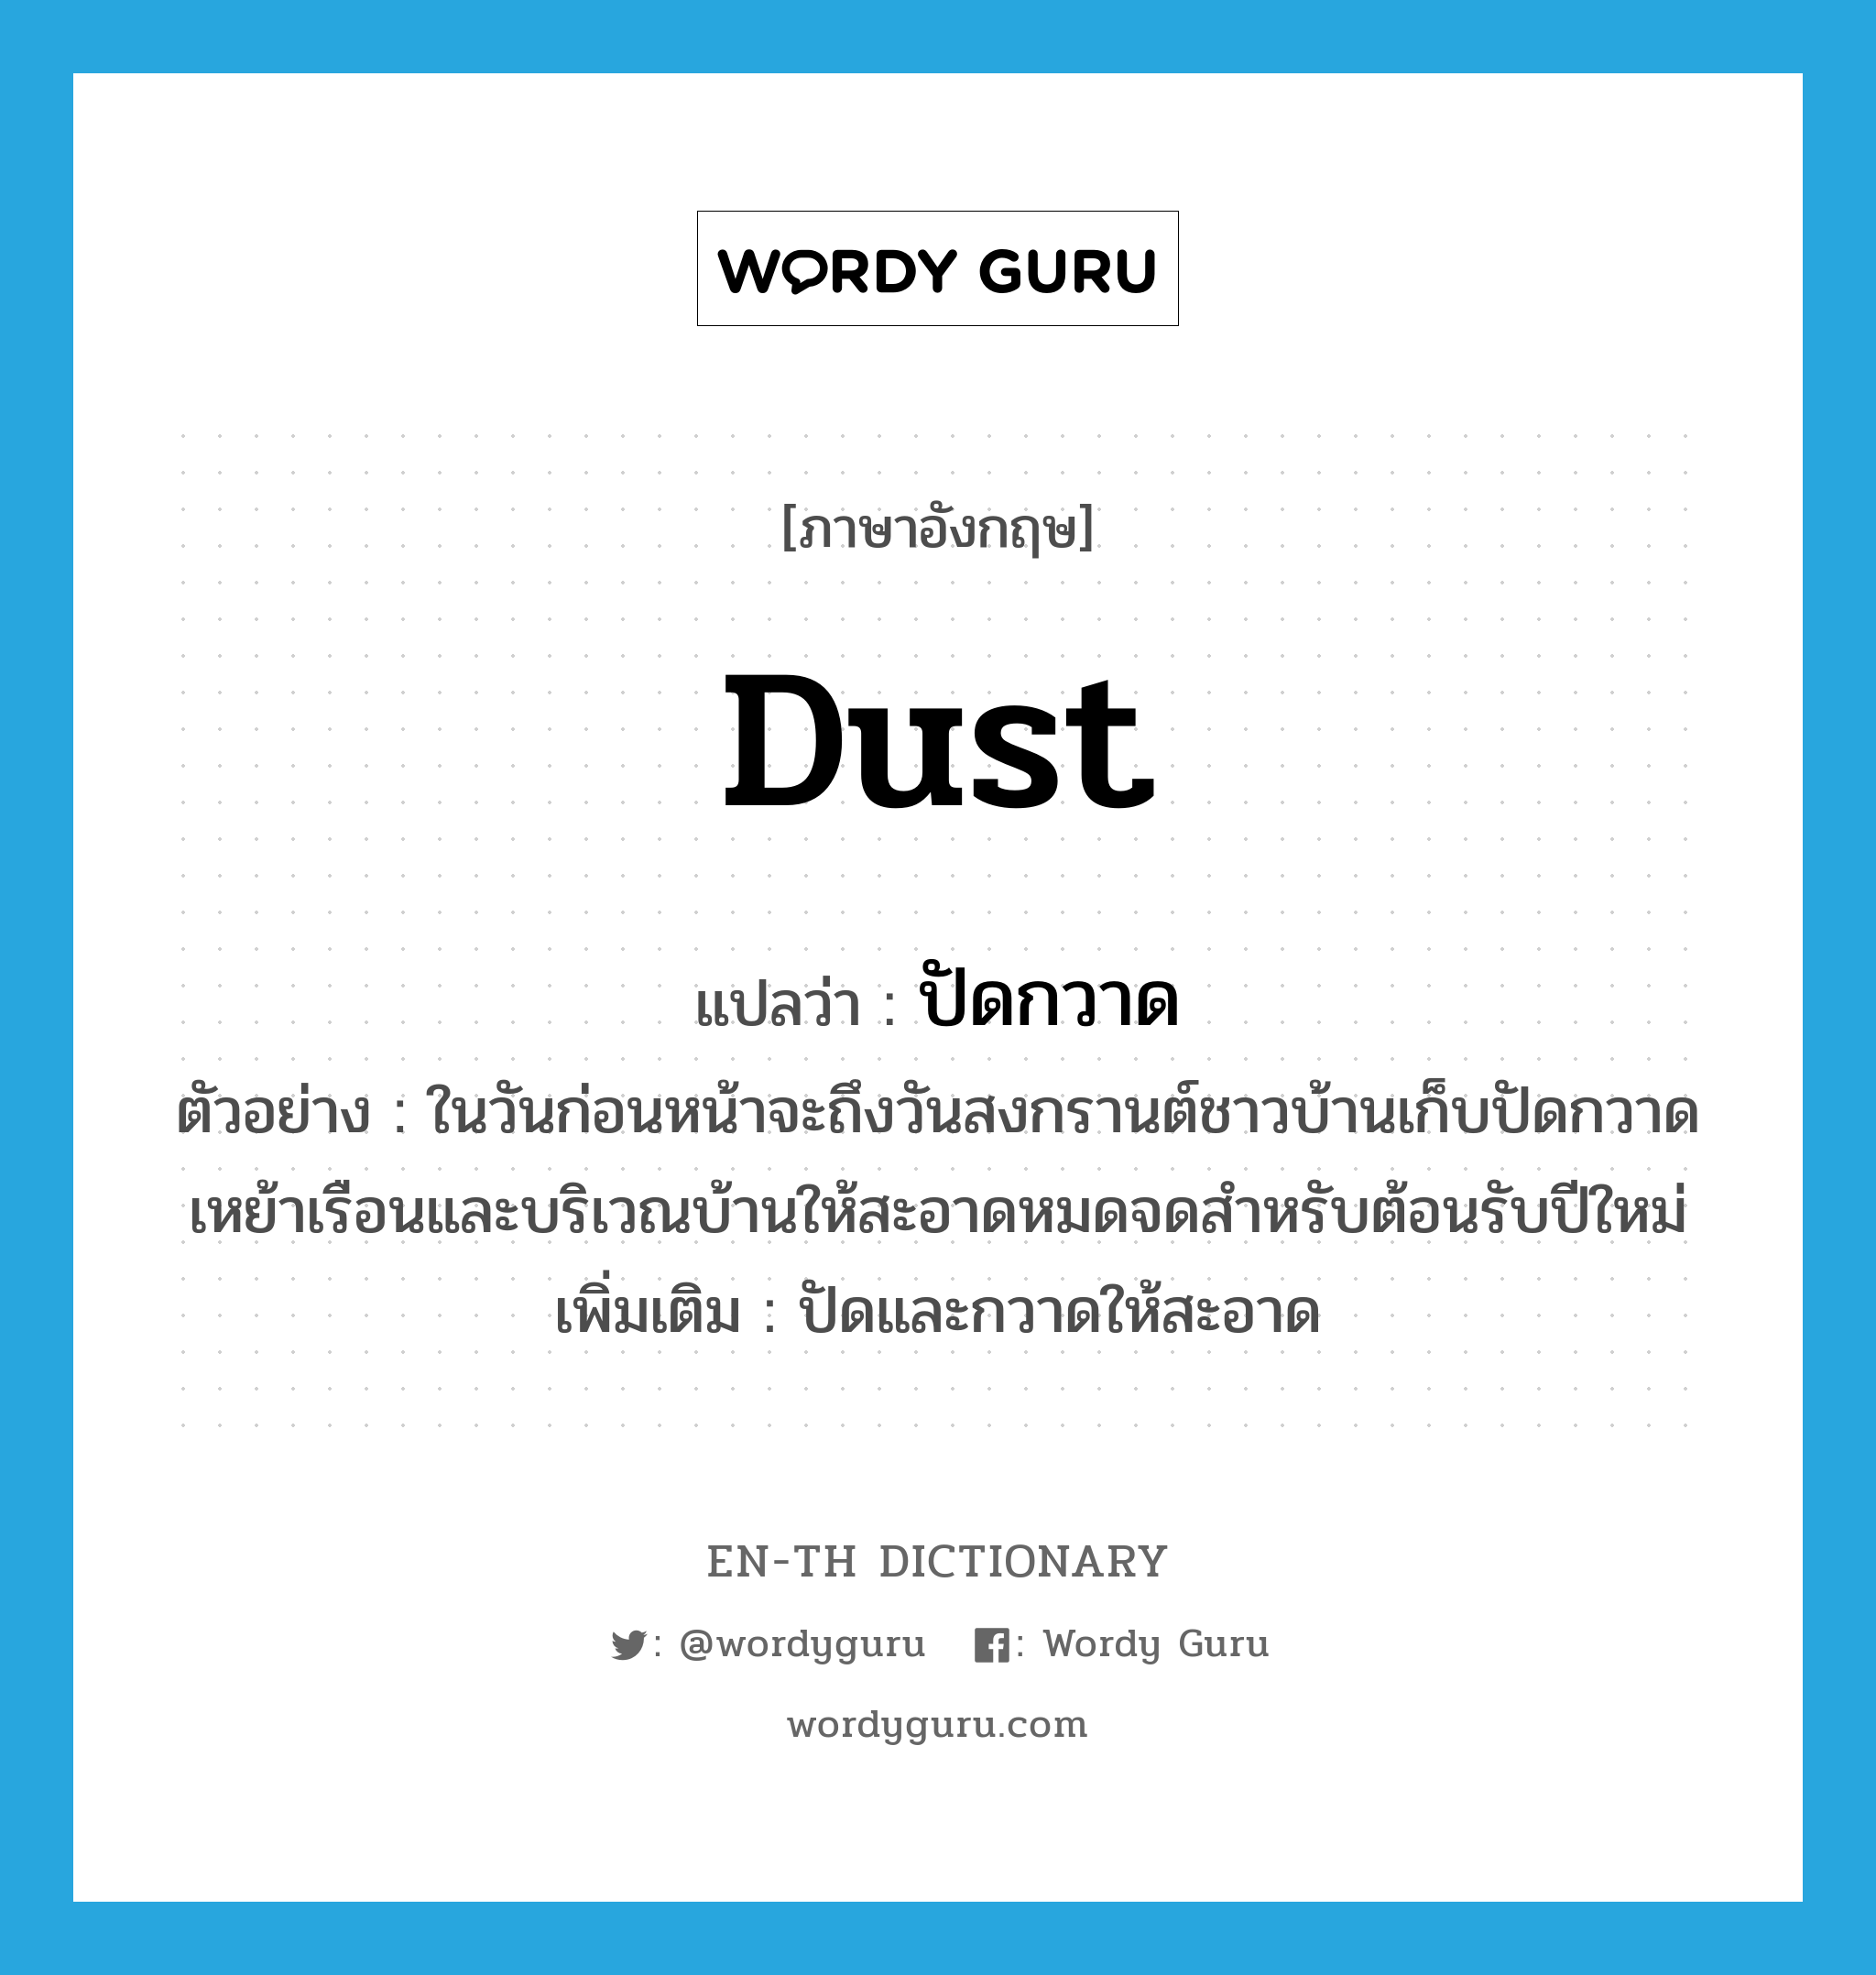 dust แปลว่า?, คำศัพท์ภาษาอังกฤษ dust แปลว่า ปัดกวาด ประเภท V ตัวอย่าง ในวันก่อนหน้าจะถึงวันสงกรานต์ชาวบ้านเก็บปัดกวาดเหย้าเรือนและบริเวณบ้านให้สะอาดหมดจดสำหรับต้อนรับปีใหม่ เพิ่มเติม ปัดและกวาดให้สะอาด หมวด V